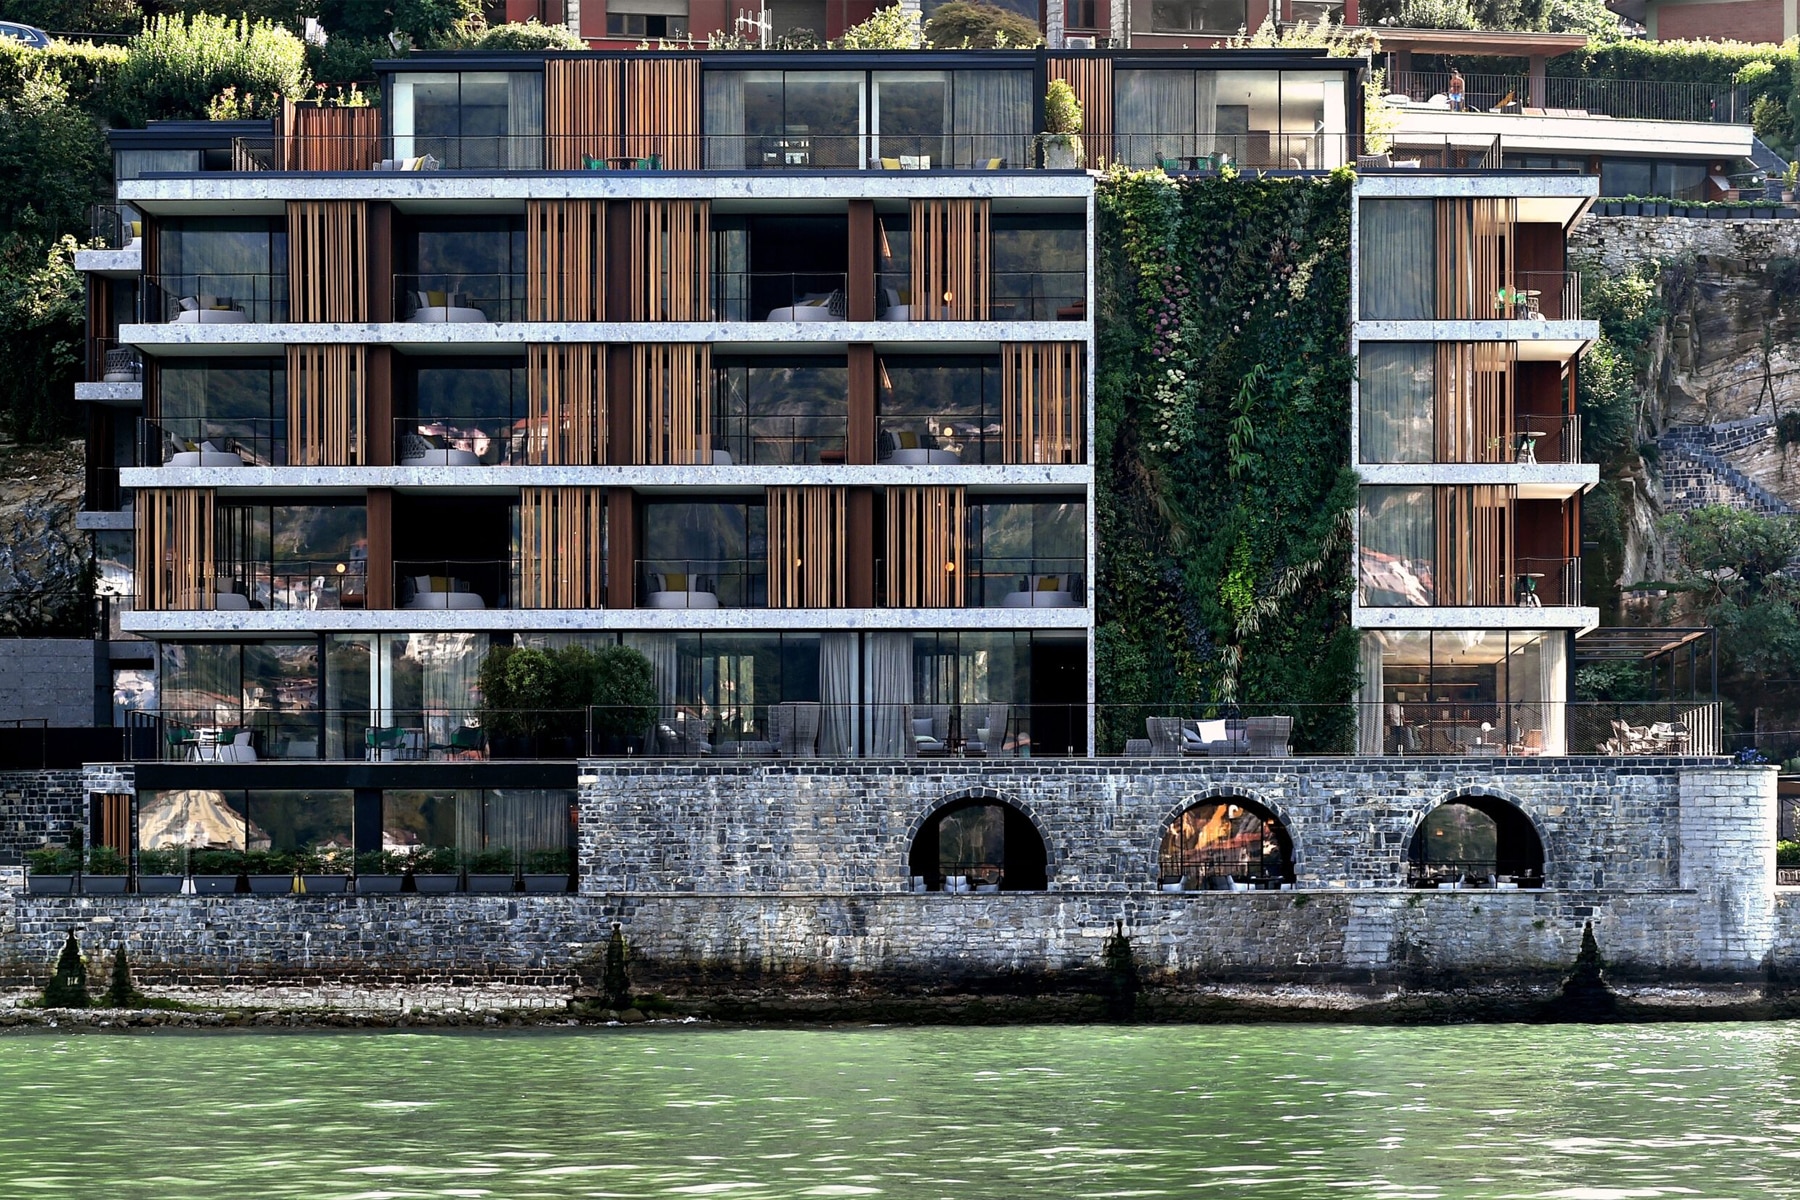 Il Sereno Lago di Como Hotel Lusso